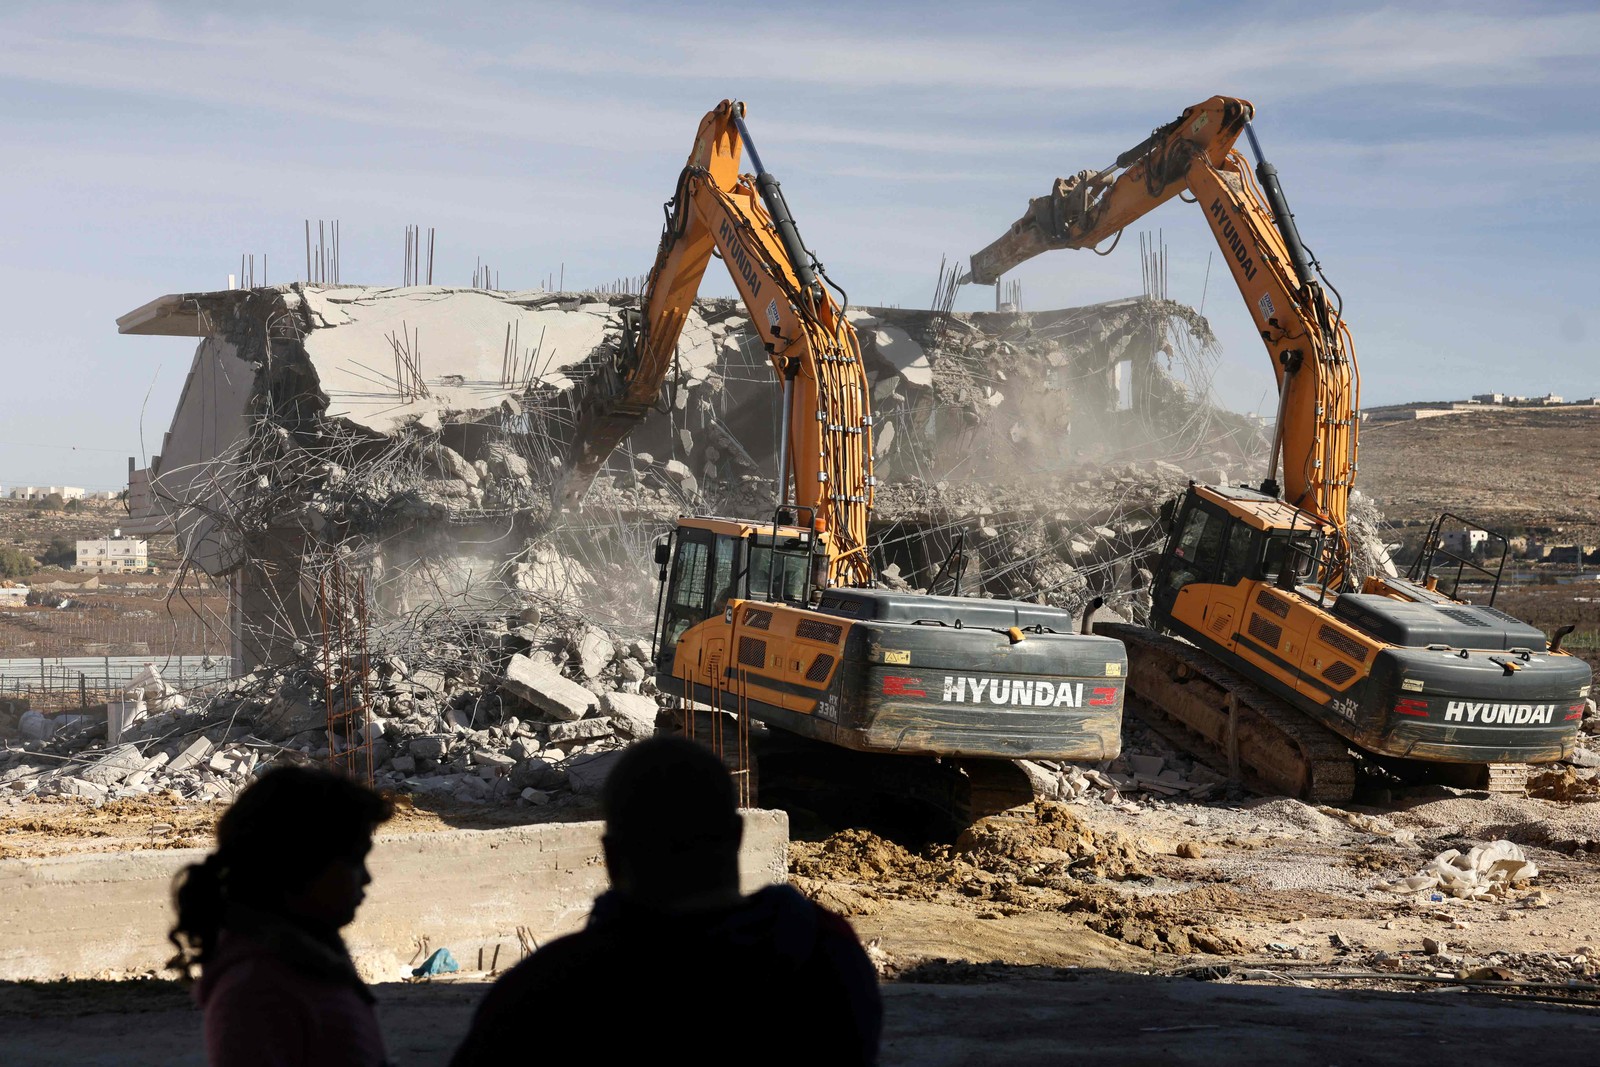 Escavadeiras israelenses demolem uma casa palestina em construção sem permissão das autoridades israelenses, na cidade ocupada de Hebron, na Cisjordânia — Foto: HAZEM BADER / AFP